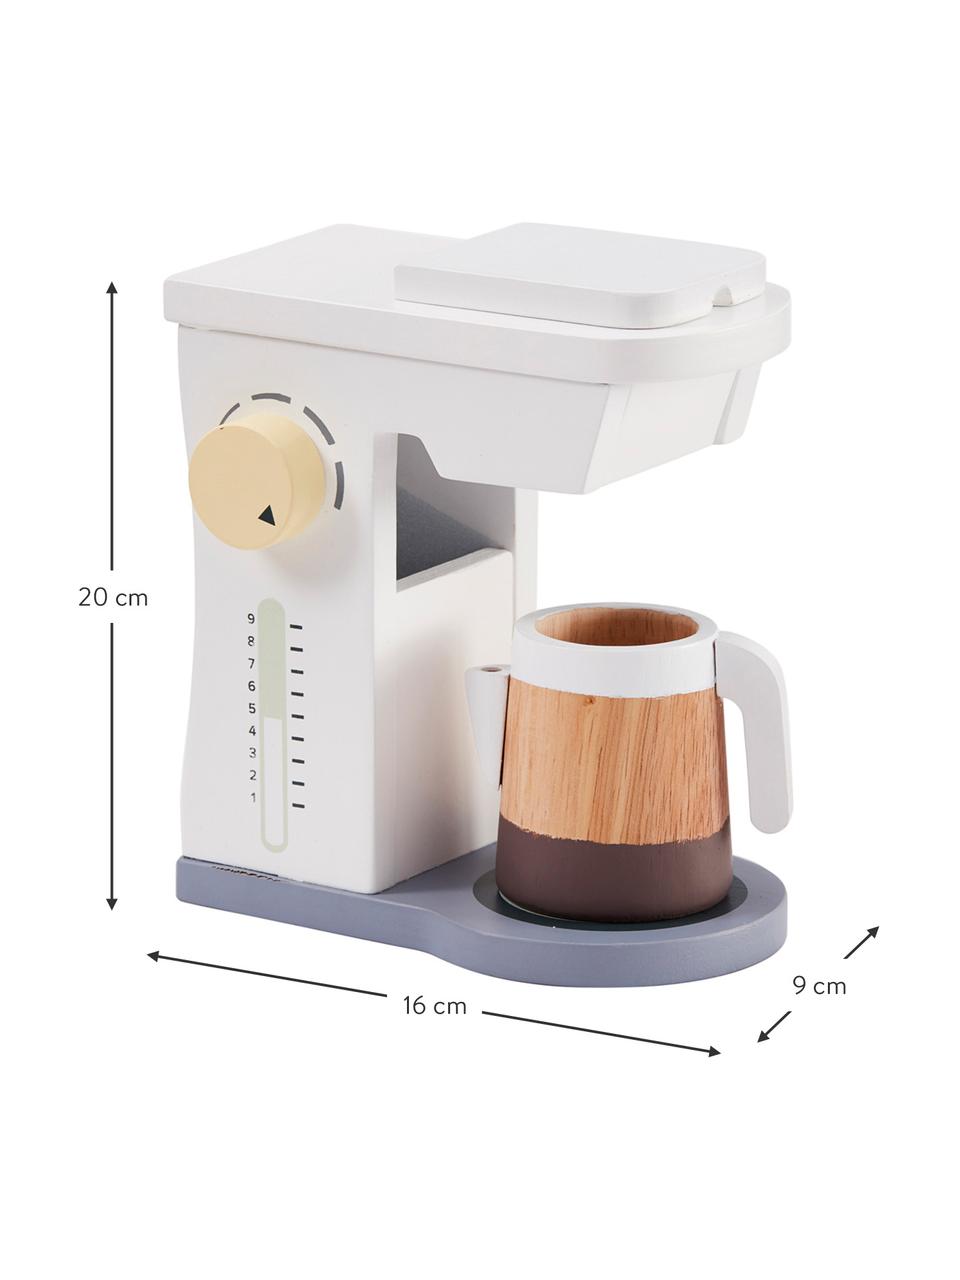 Spielzeug-Set Coffee Machine, Holz, Mehrfarbig, B 16 x H 20 cm